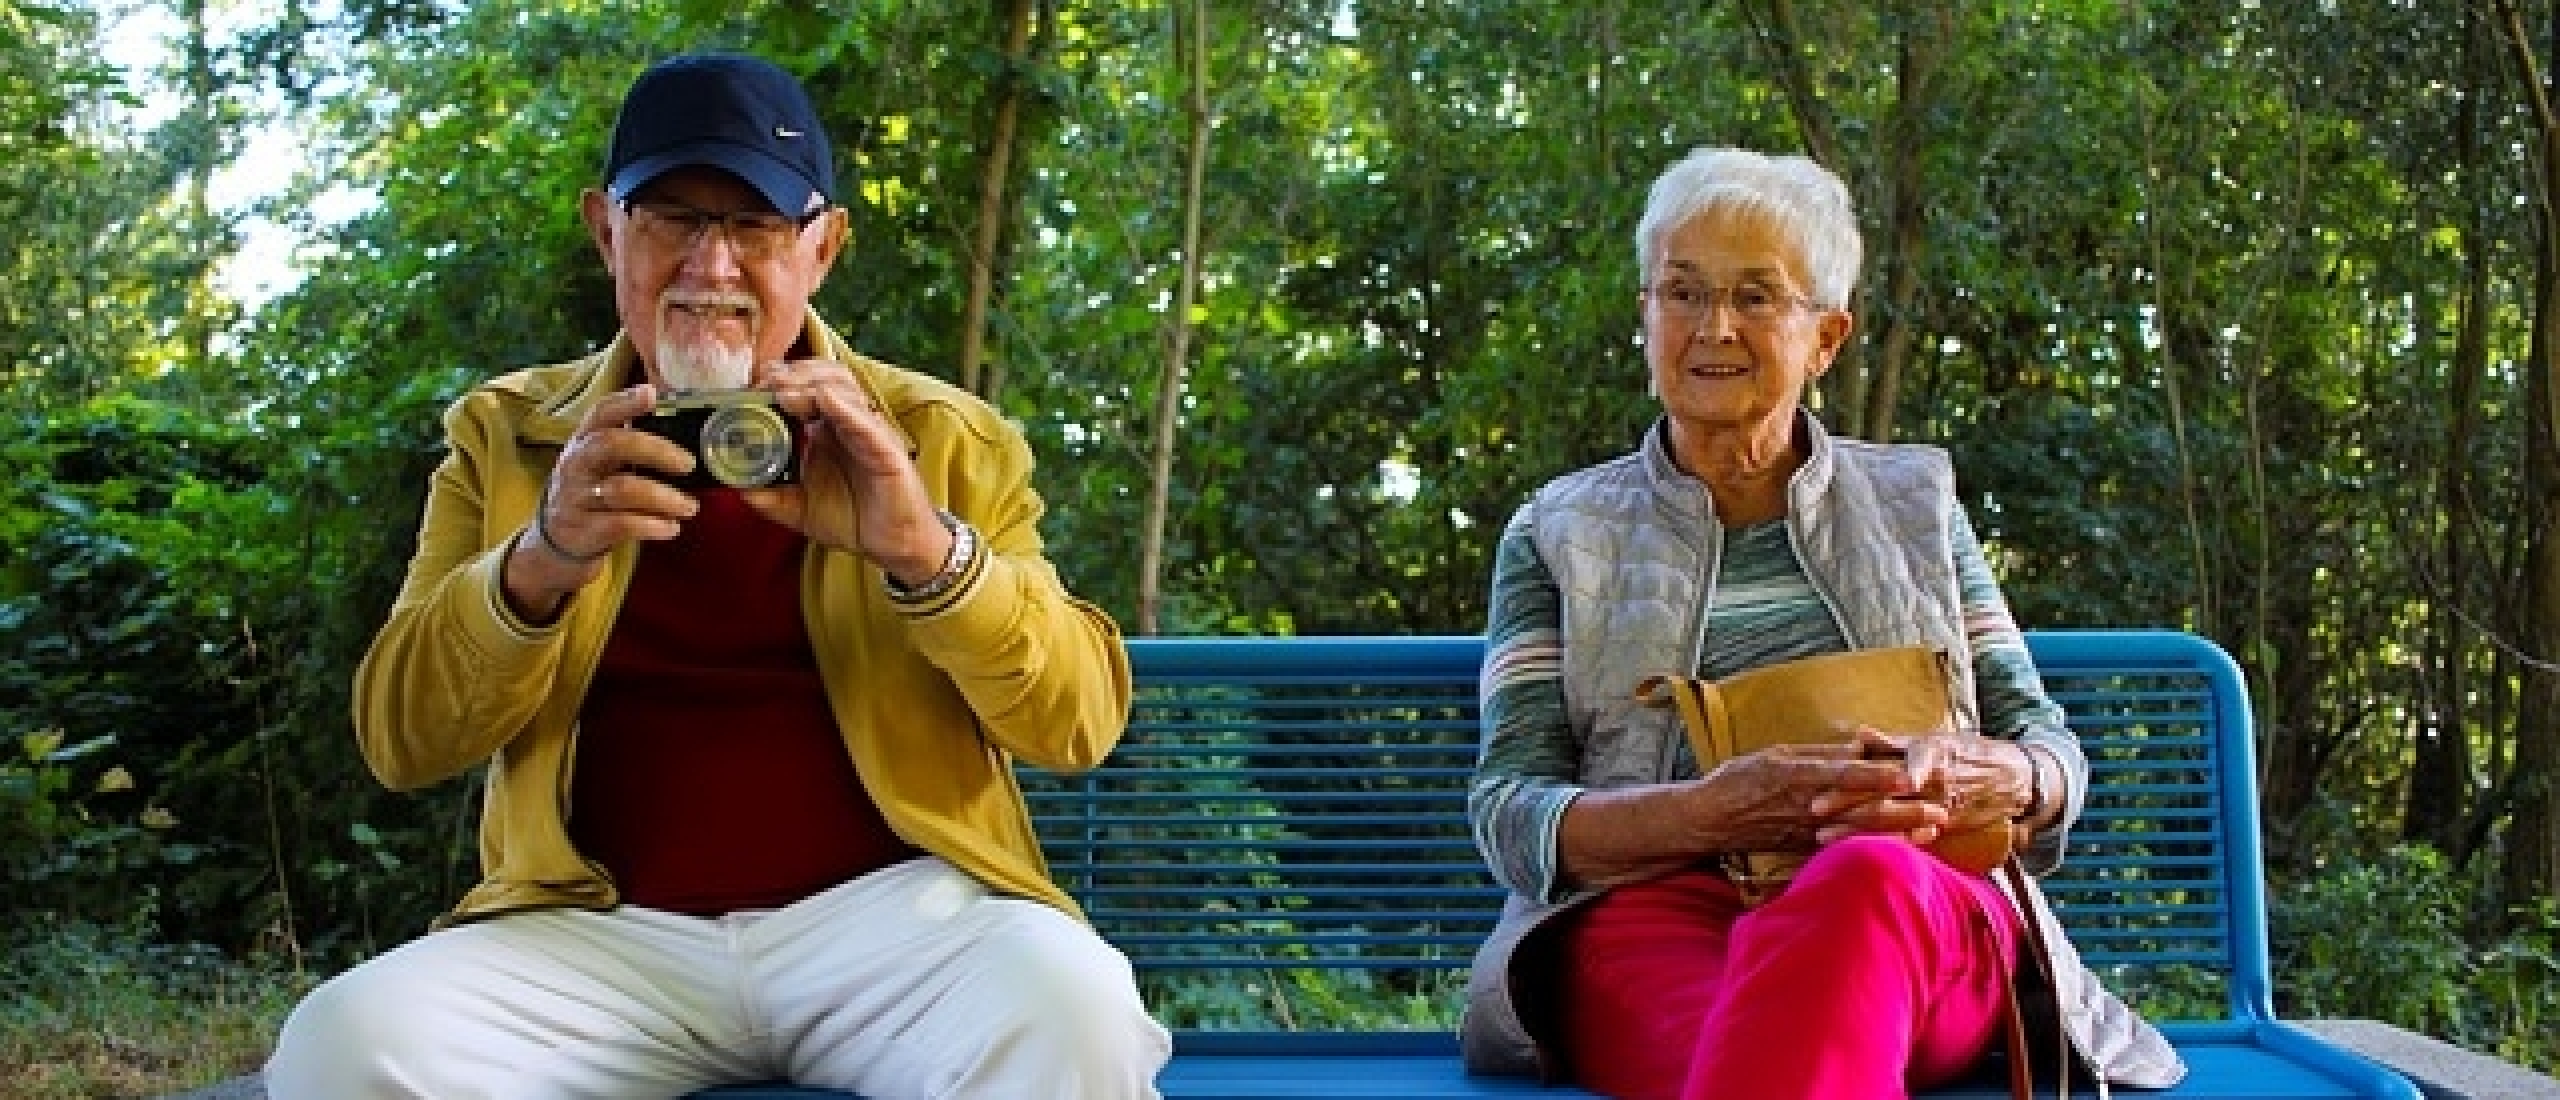 Senioren online daten – geweldig idee of toch niks voor jou?